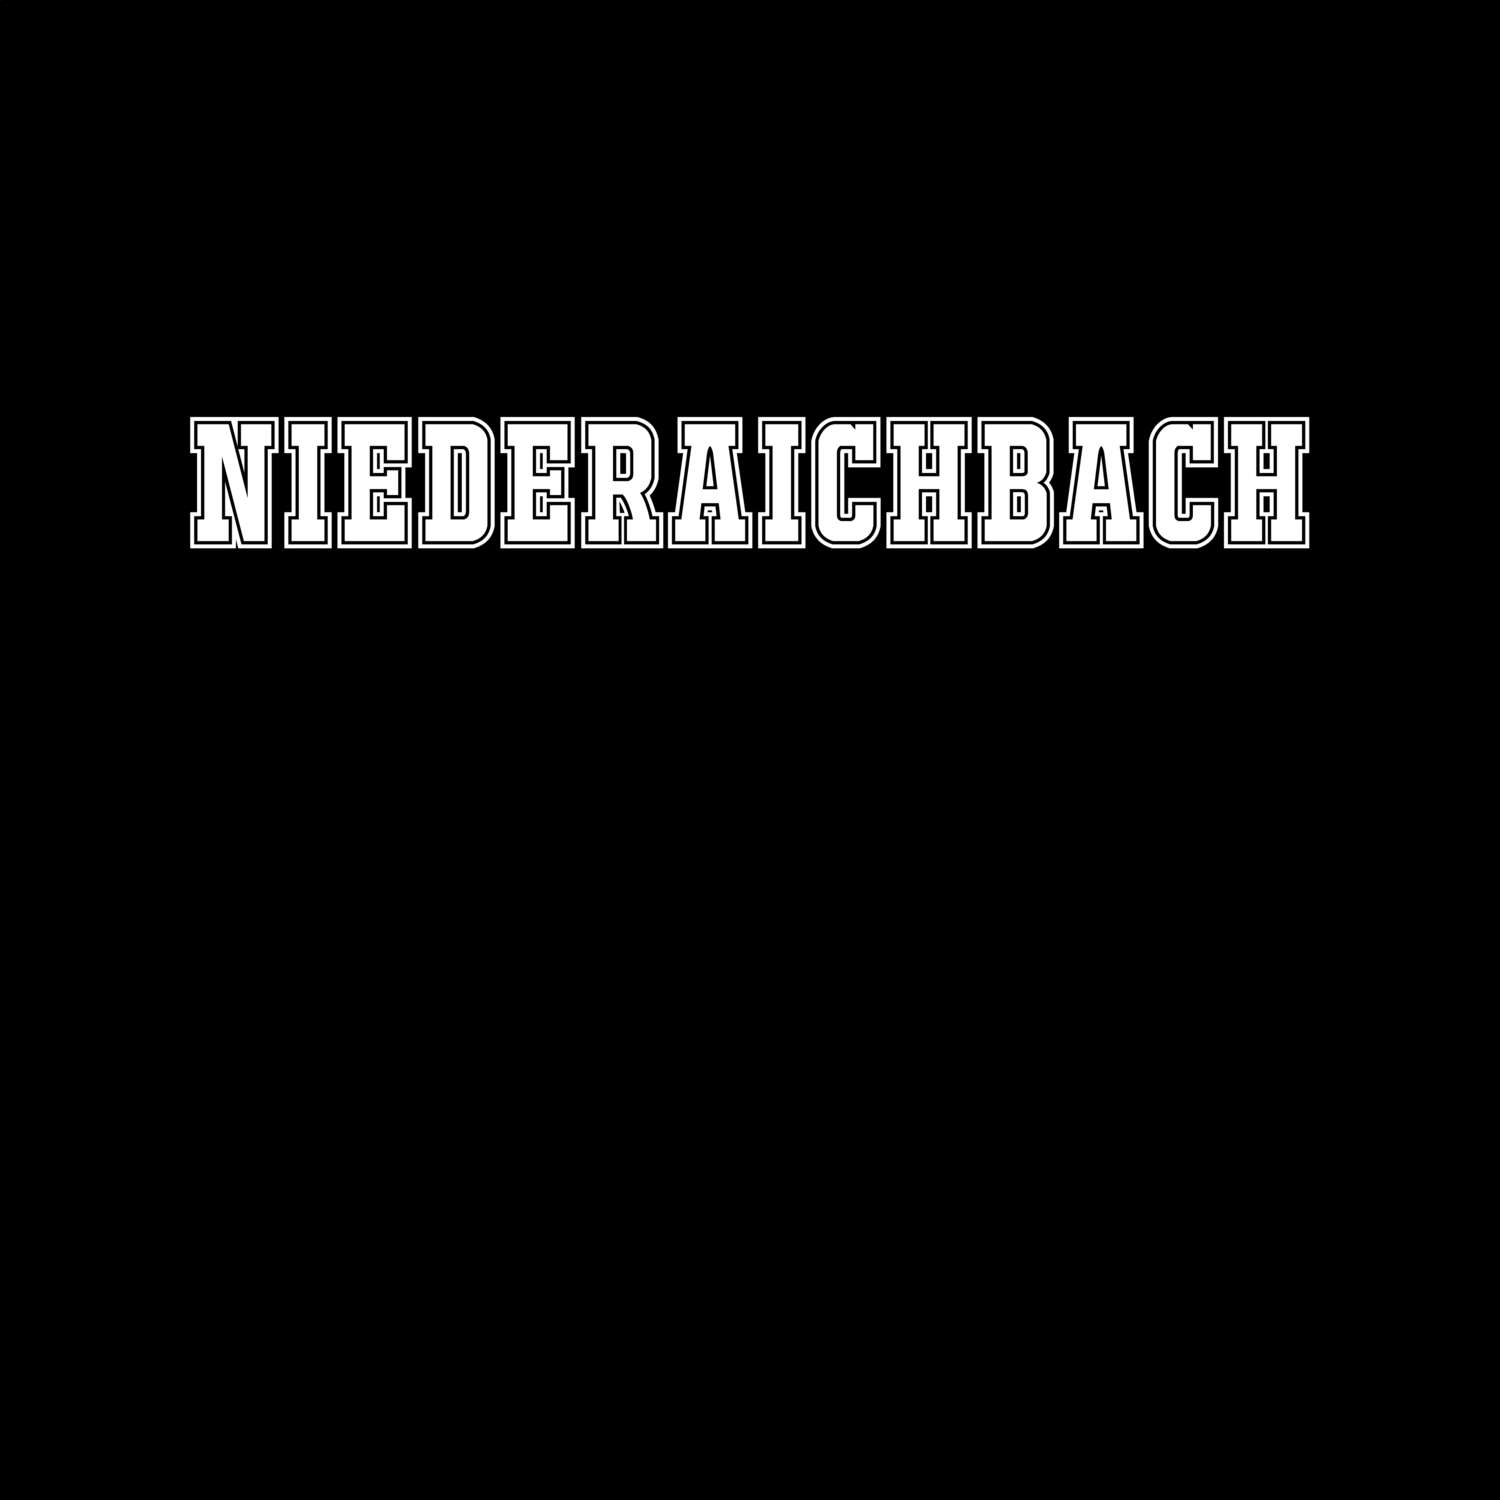 Niederaichbach T-Shirt »Classic«